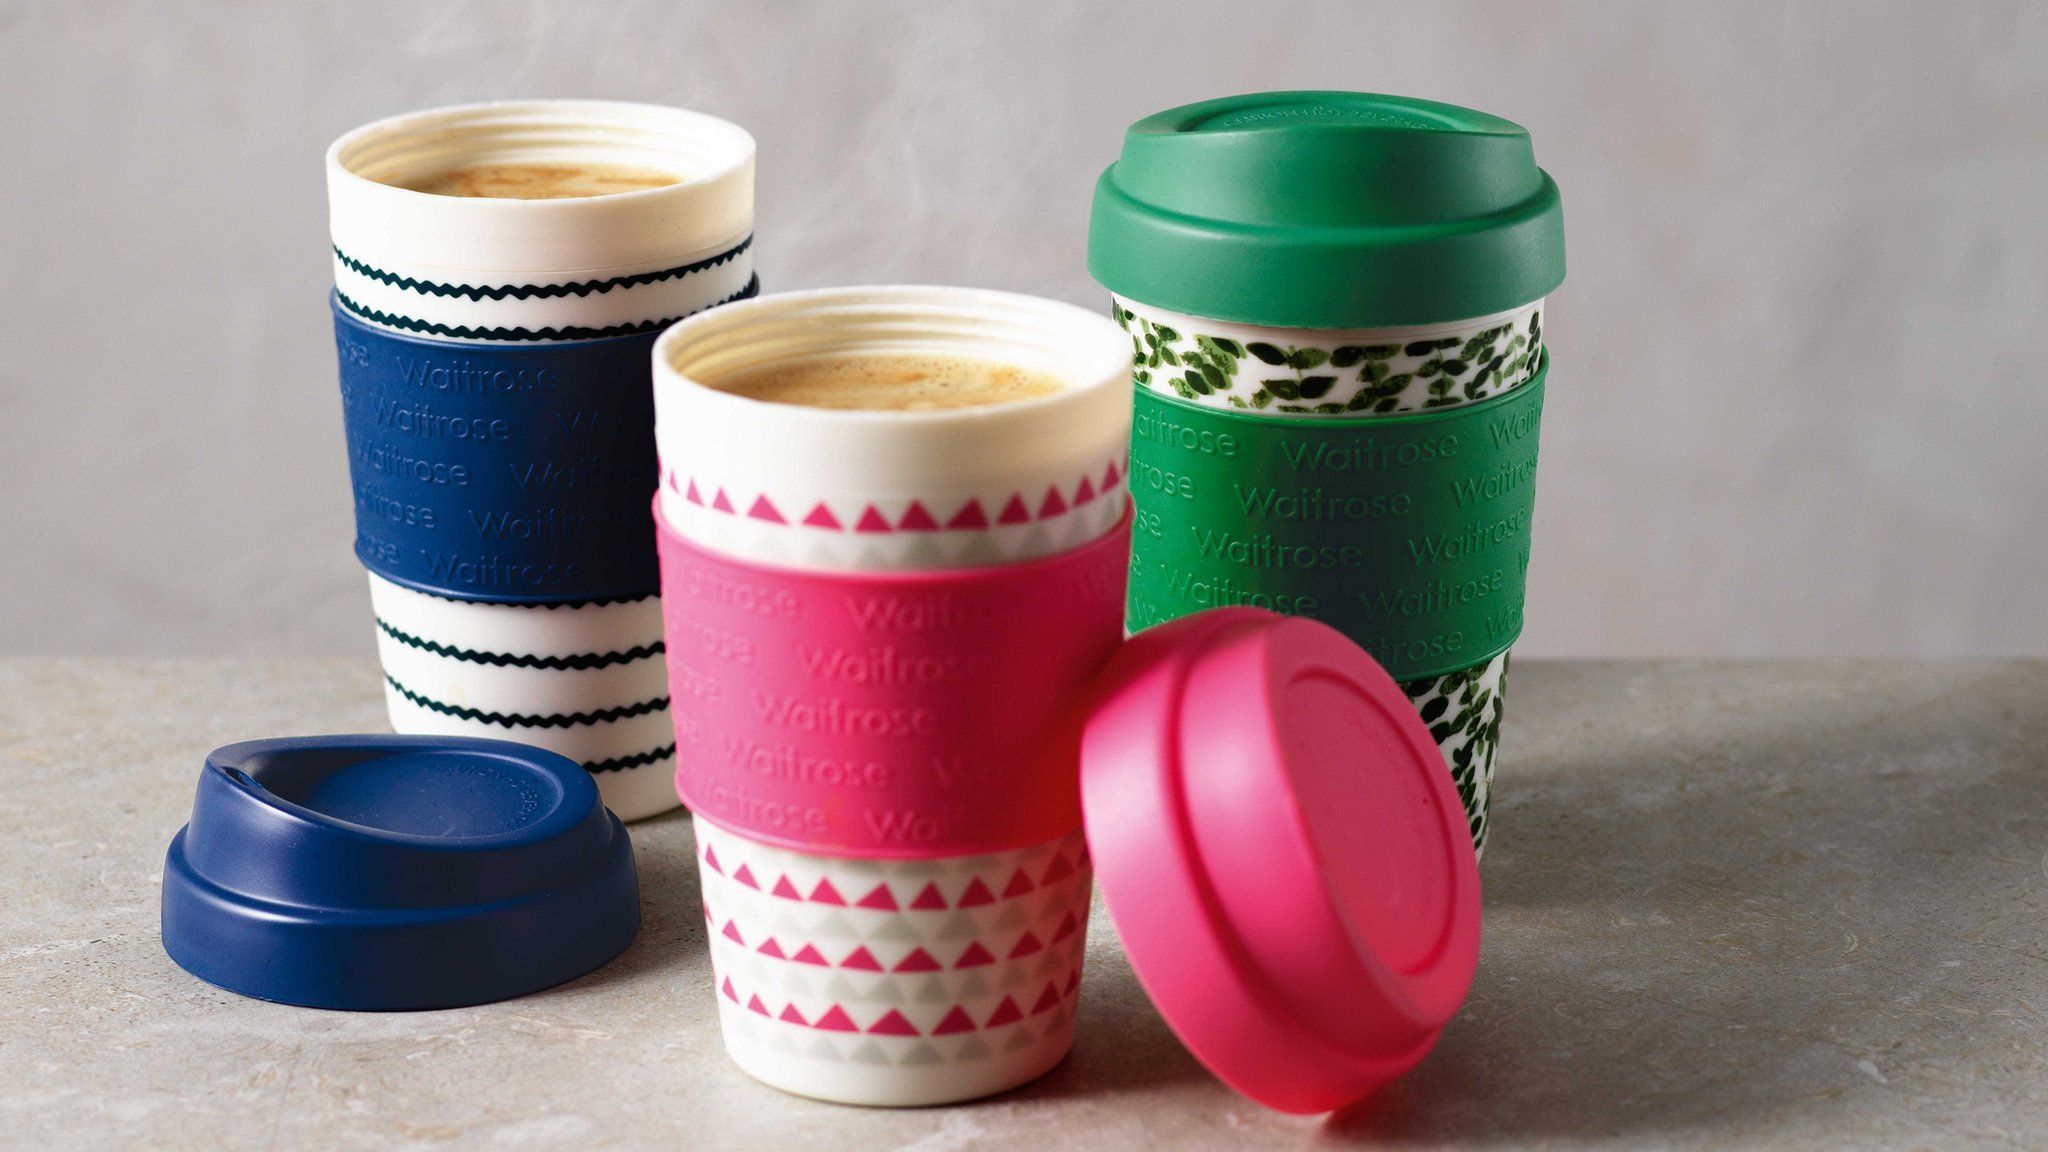 Waitrose reusable cups